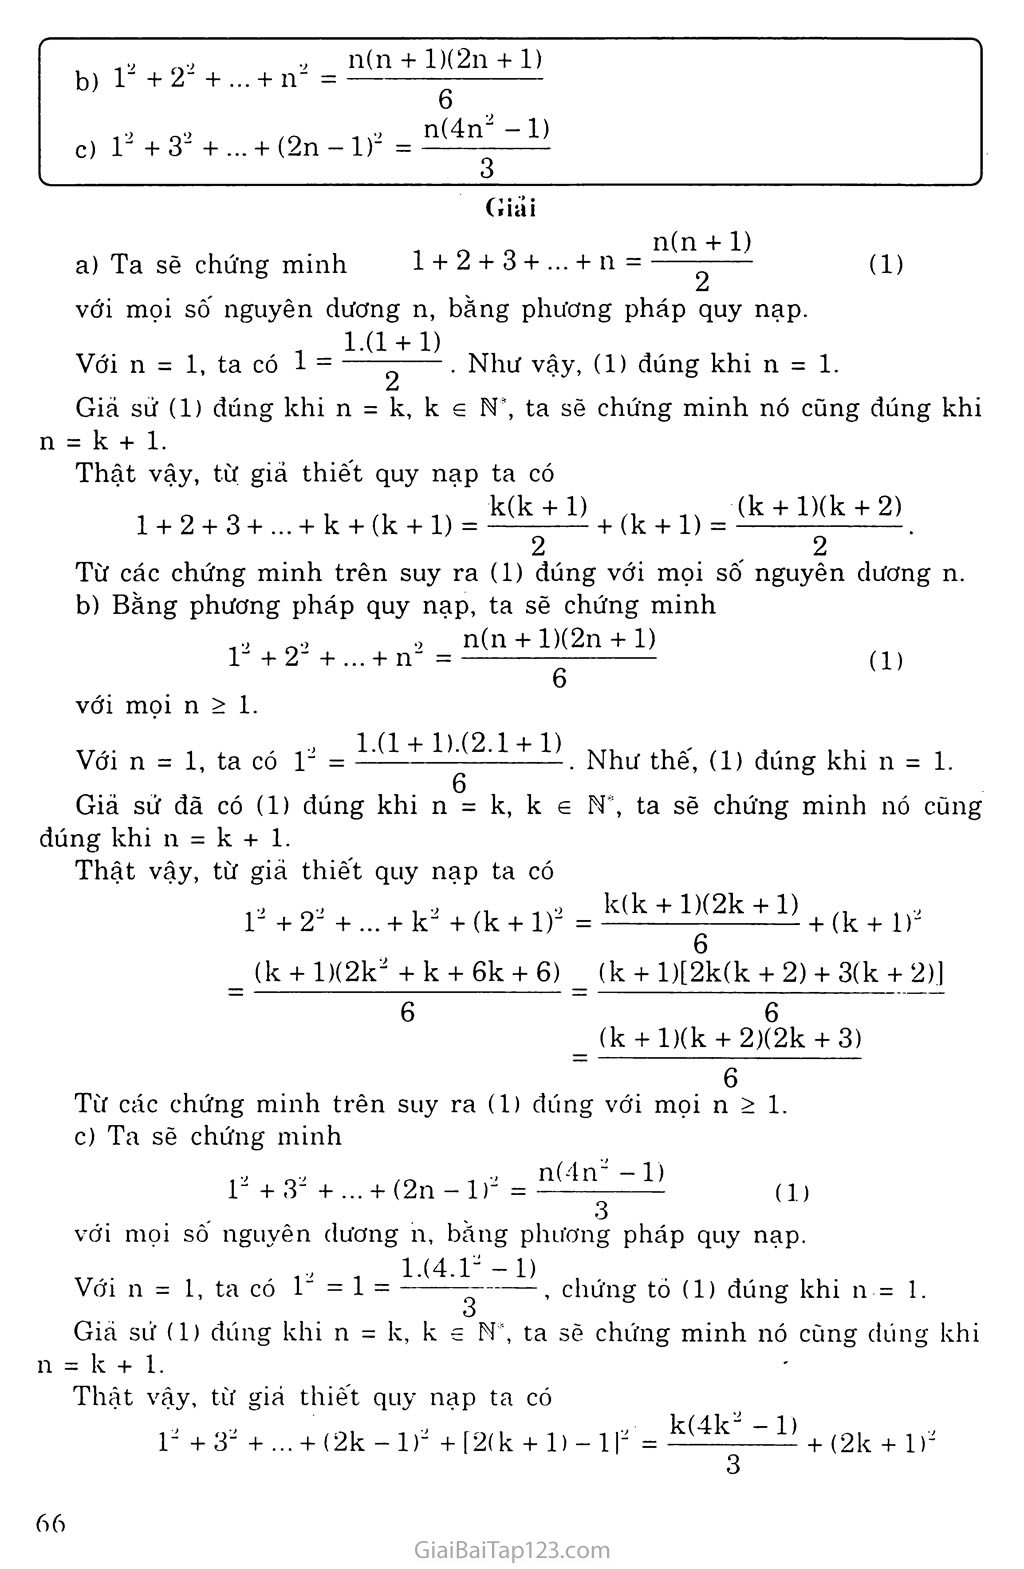 Vấn đề 1. Phương pháp qui nạp toán học trang 6